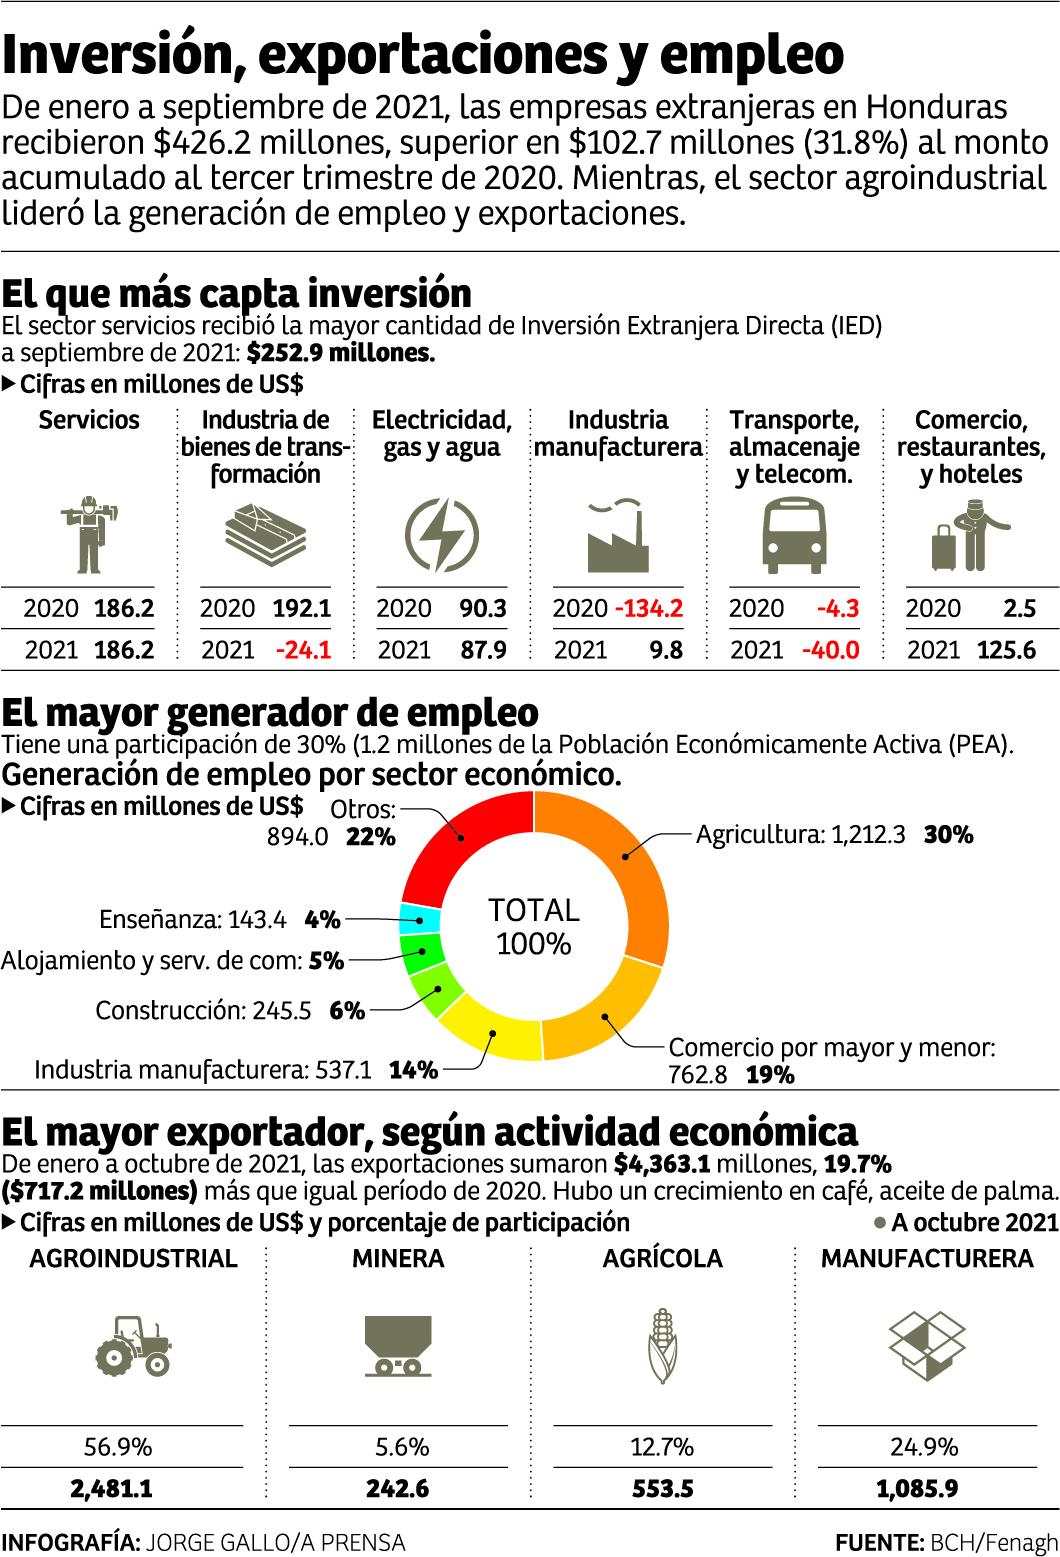 Nuevas inversiones espera el sector productivo hondureño